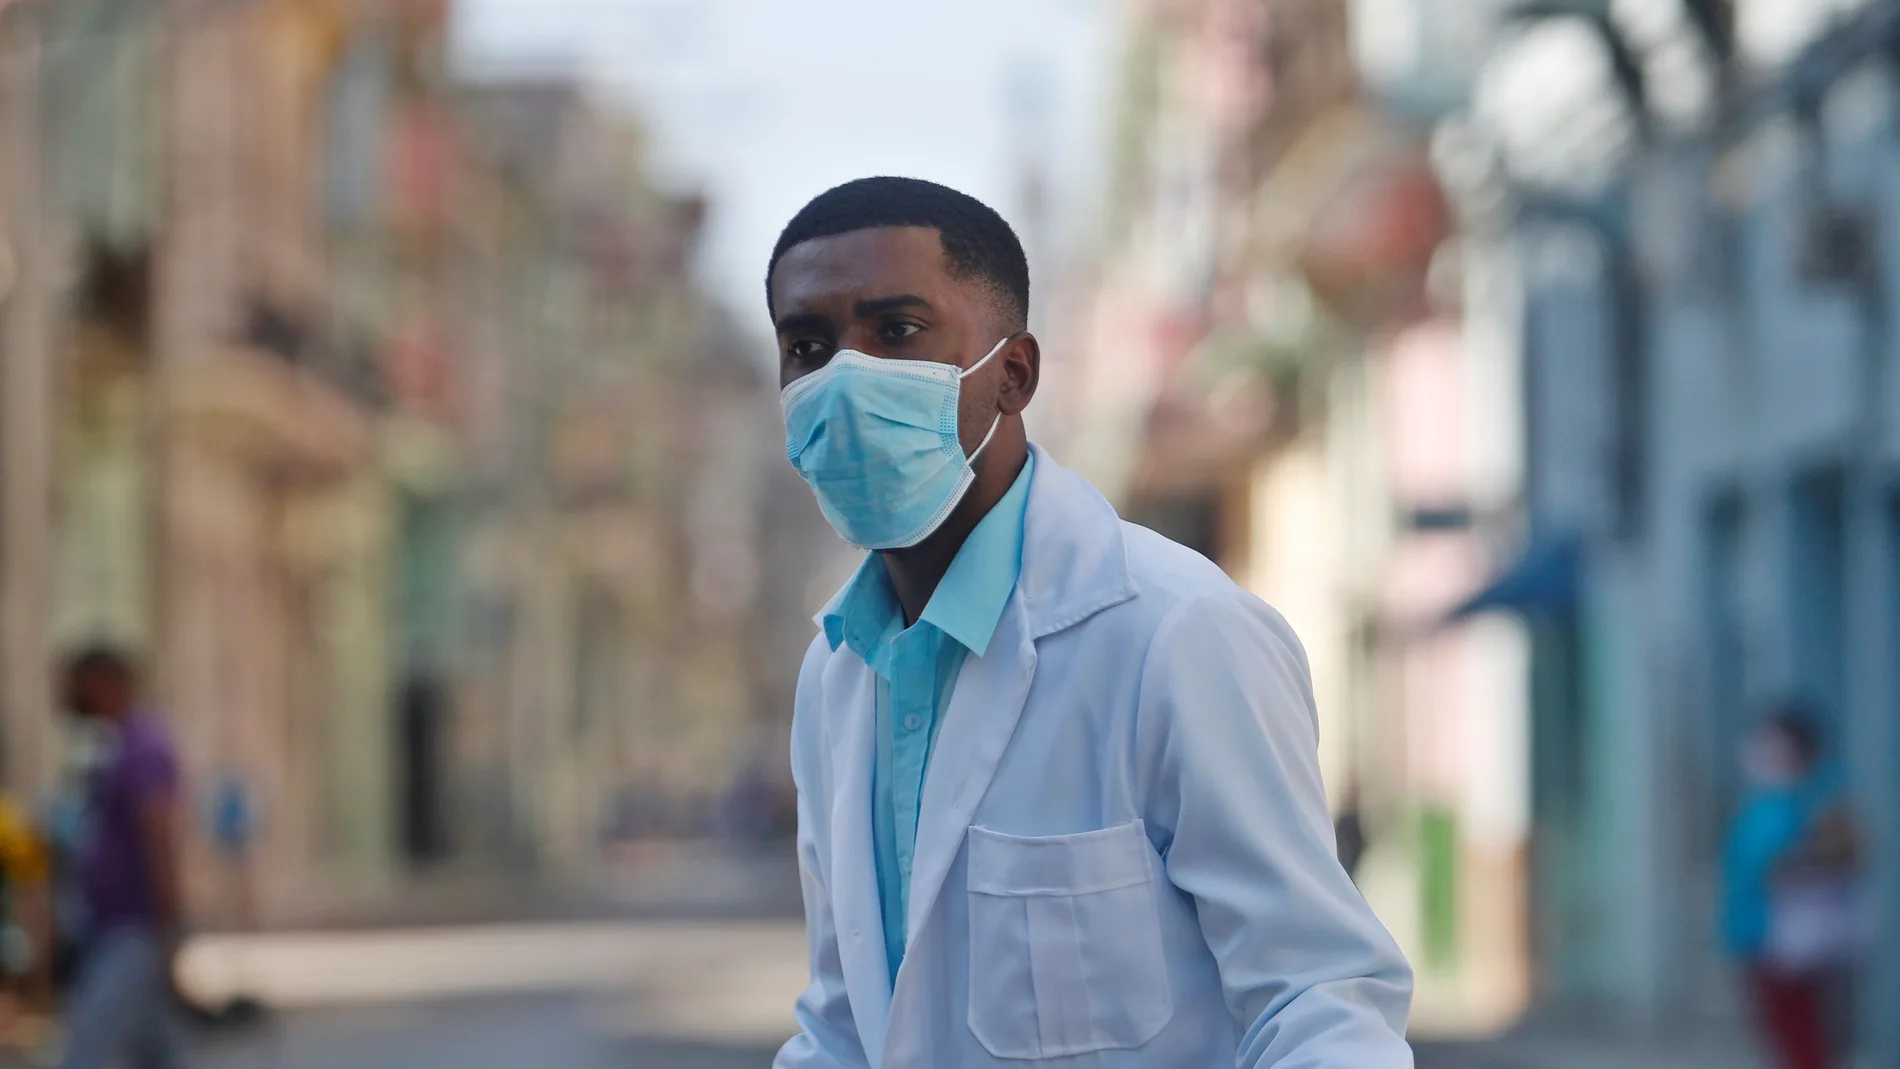 AME3194. LA HABANA (CUBA), 04/02/2021.- Un trabajador de la salud usa hoy mascarilla para protegerse de la pandemia, en La Habana (Cuba). Cuba sobrepasó este jueves los 30.000 contagios de la covid-19 en 11 meses de pandemia, al reportar 816 nuevos casos diarios de la enfermedad causada por el virus del SARS-CoV-2, según el parte del Ministerio de Salud Pública (Minsap). EFE/Yander Zamora